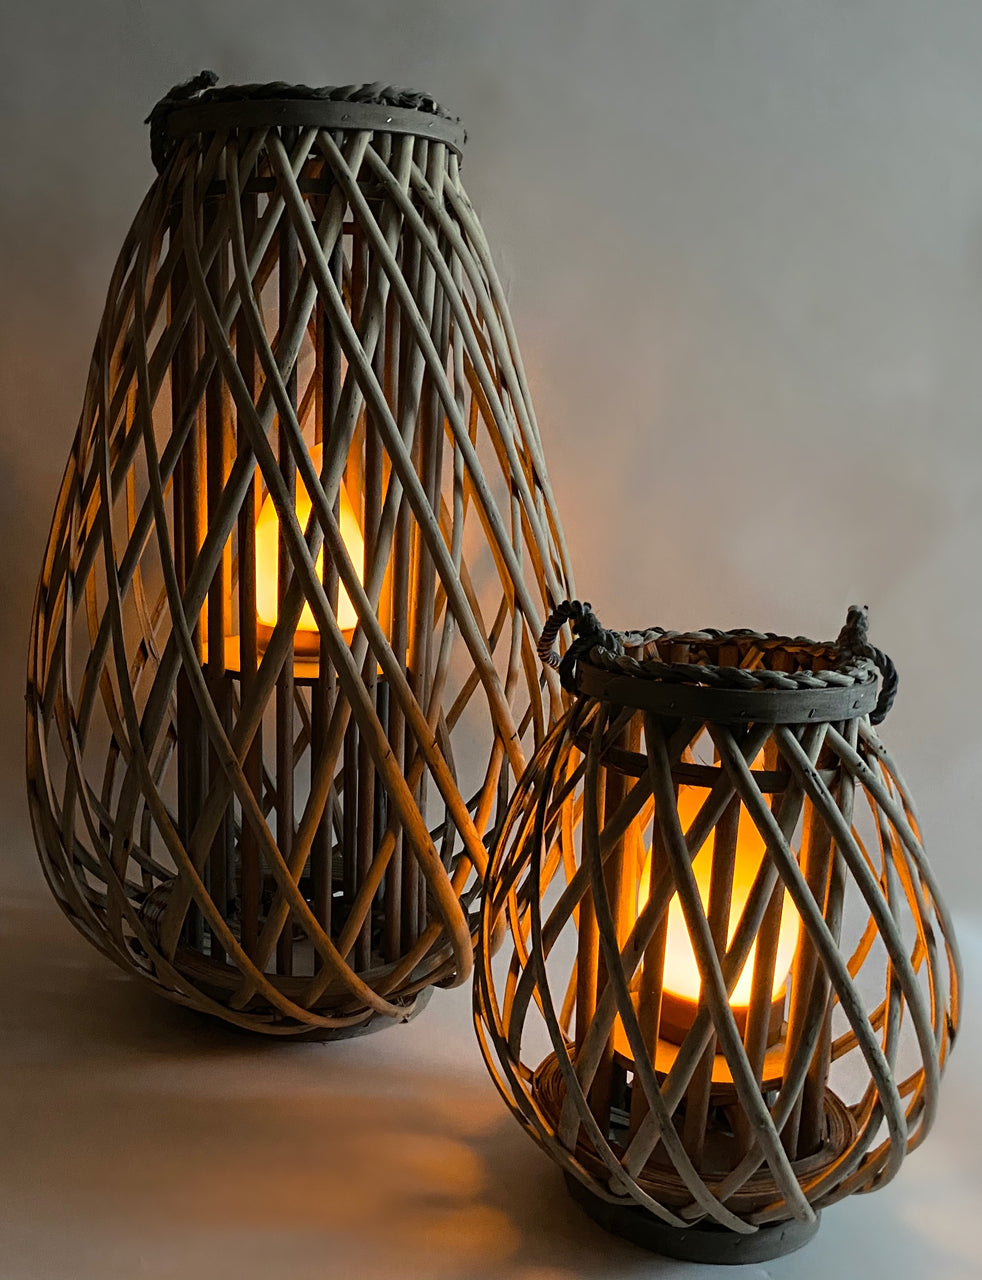 Barbara King 23" Wooden Lantern with Tiki Flame (Large)